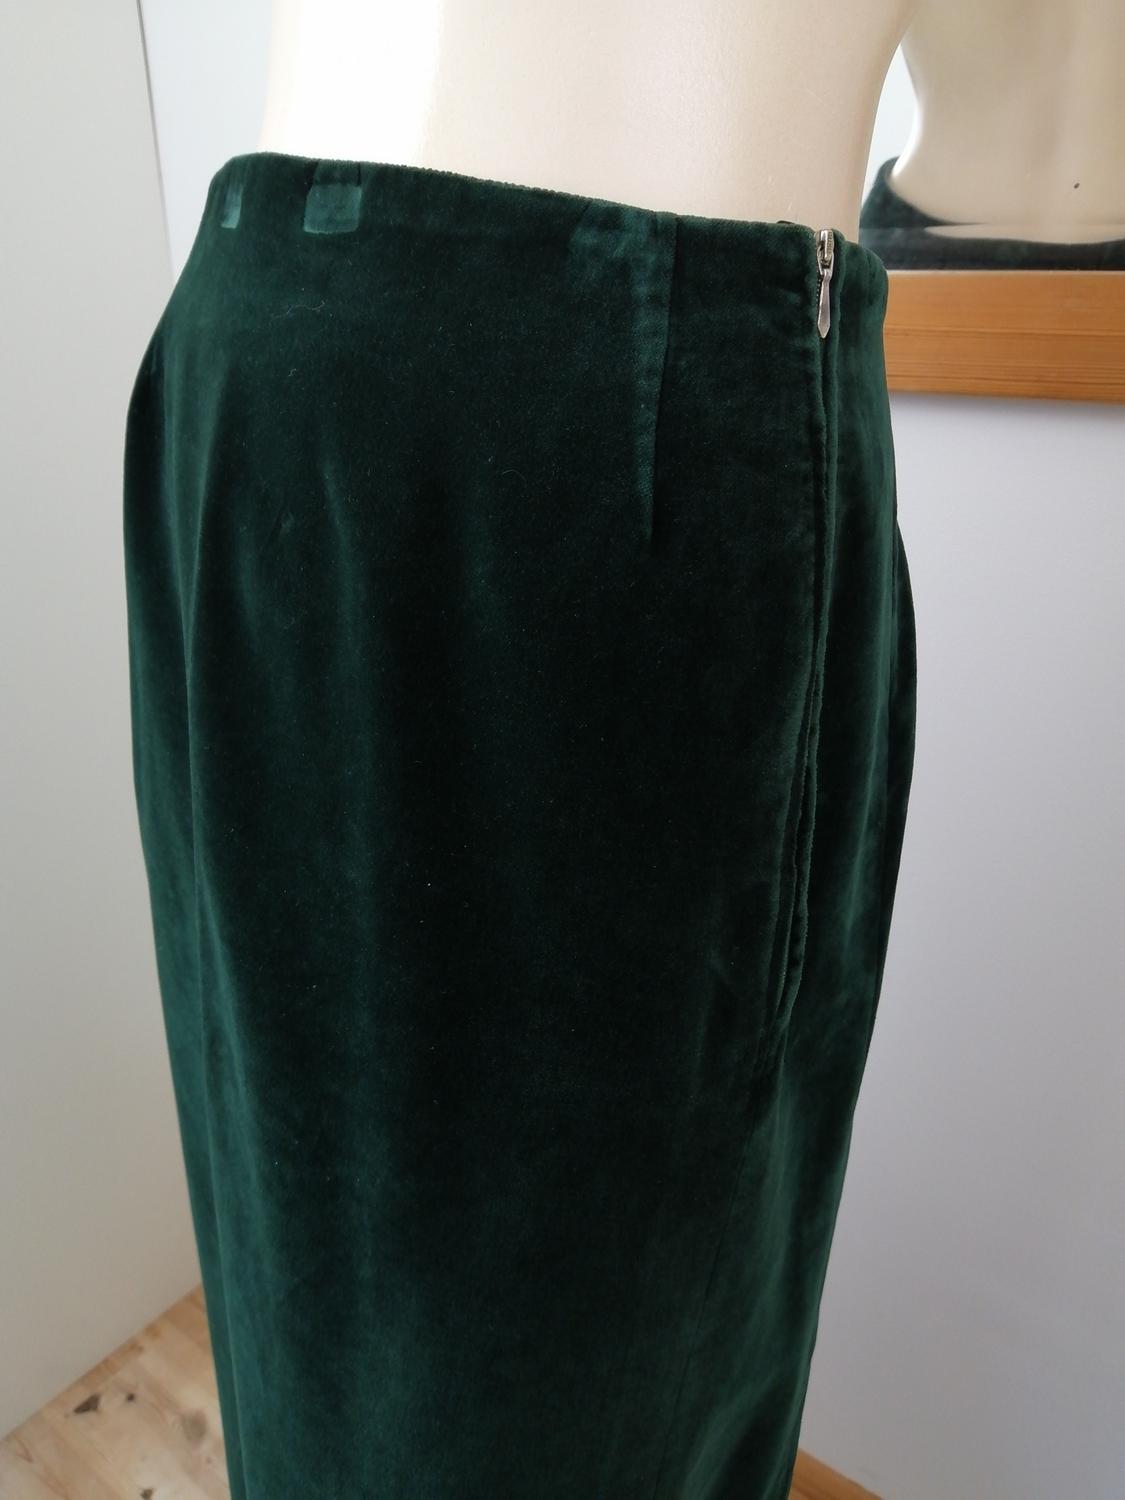 Vintage grön långkjol sammet fodrad hög slits i sidan 70-tal